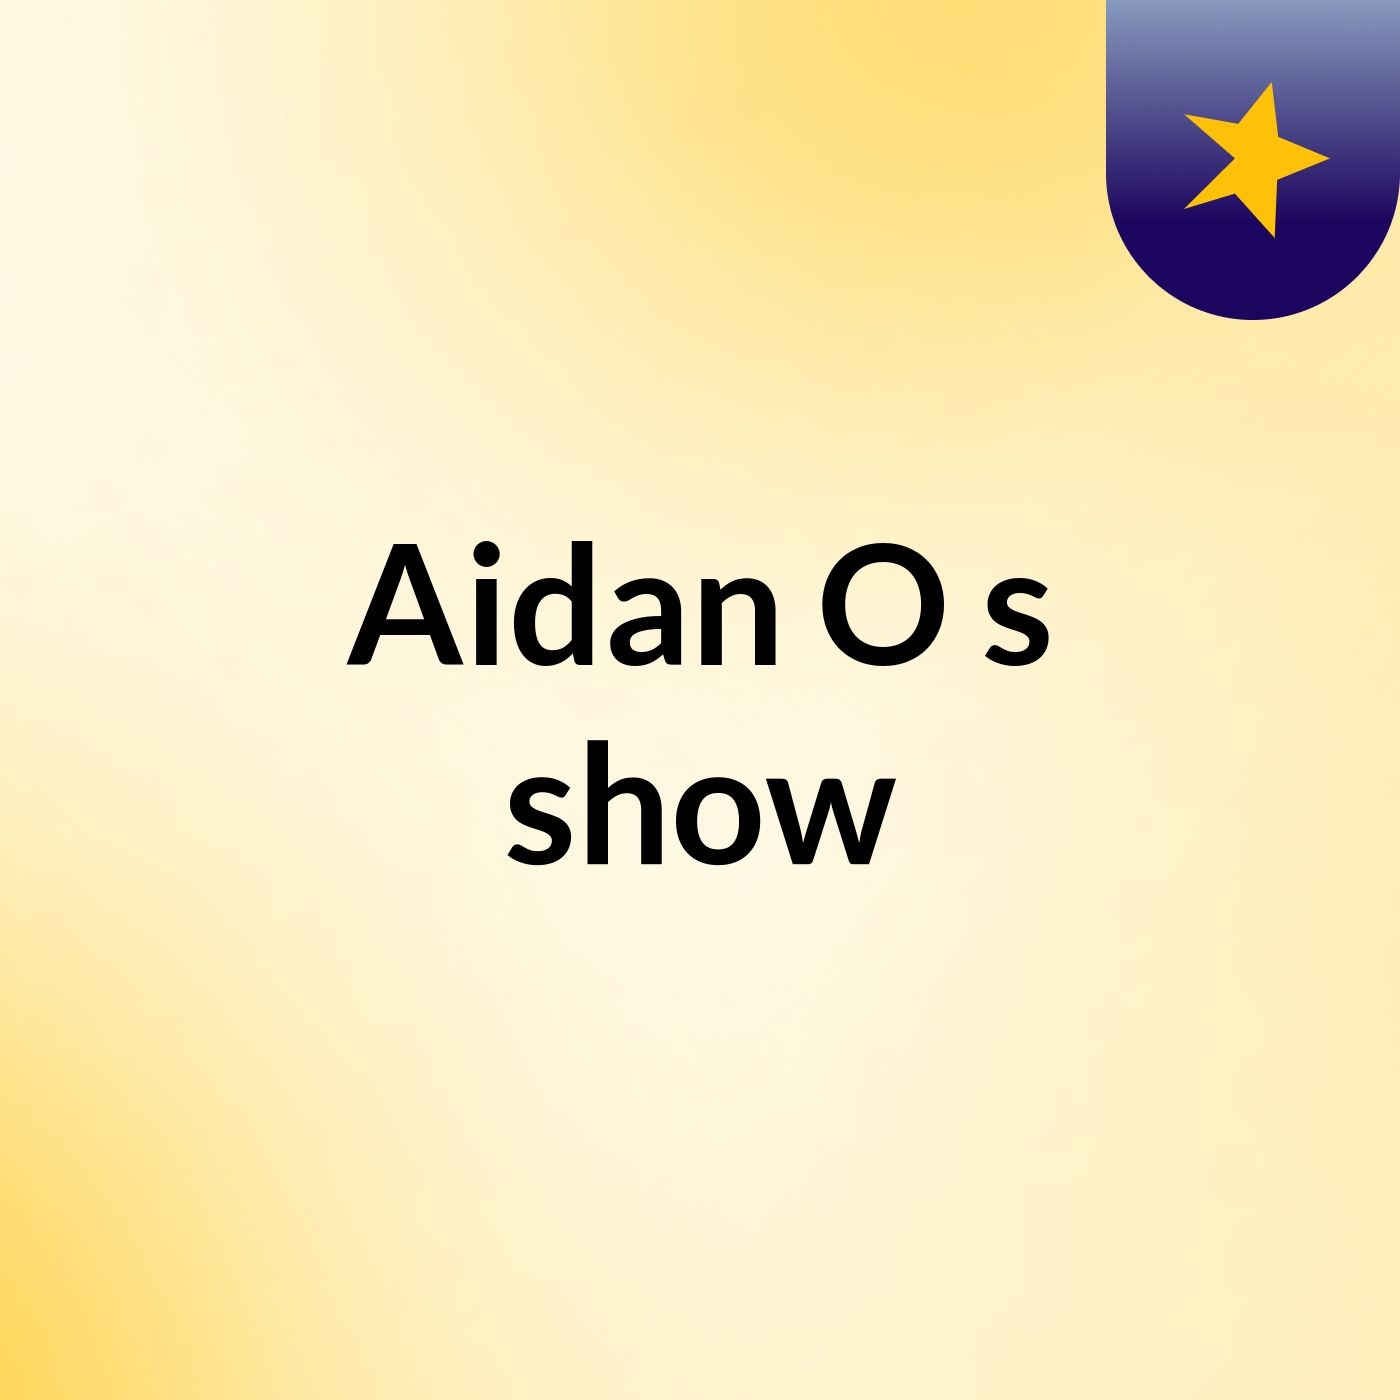 Aidan O's show